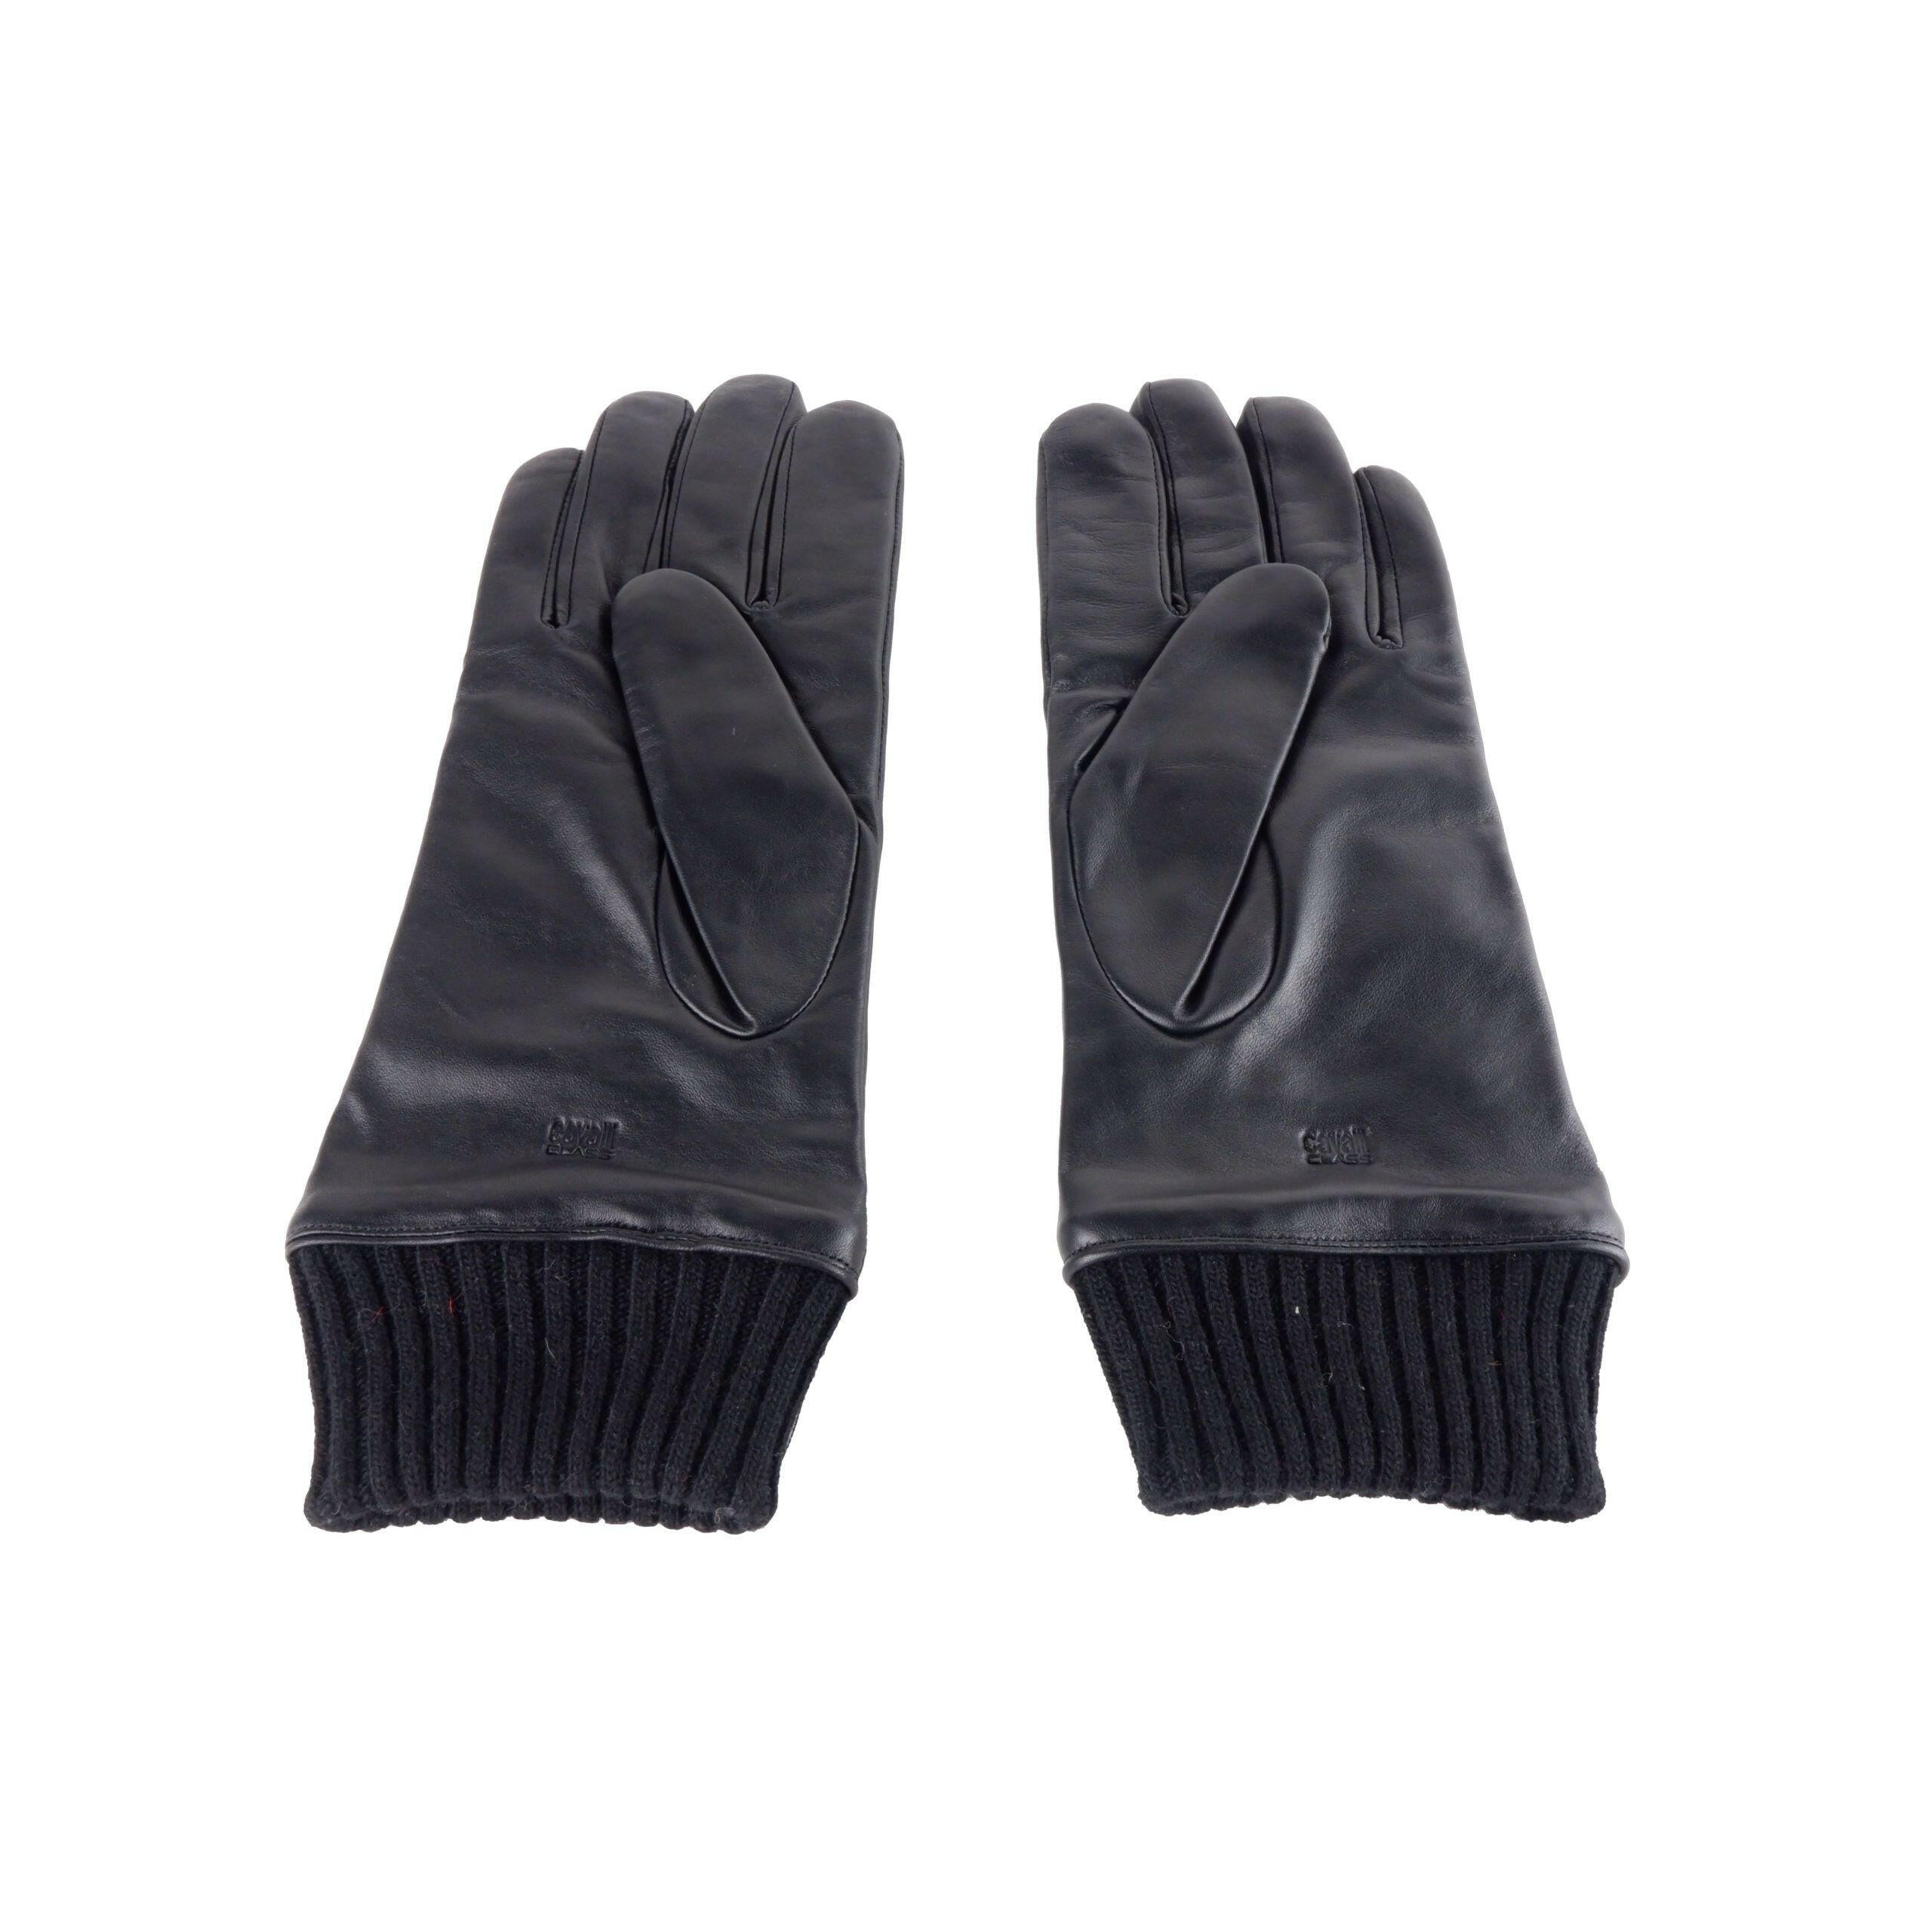 Cavalli Class Black Leather Di Lambskin Glove - GENUINE AUTHENTIC BRAND LLC  